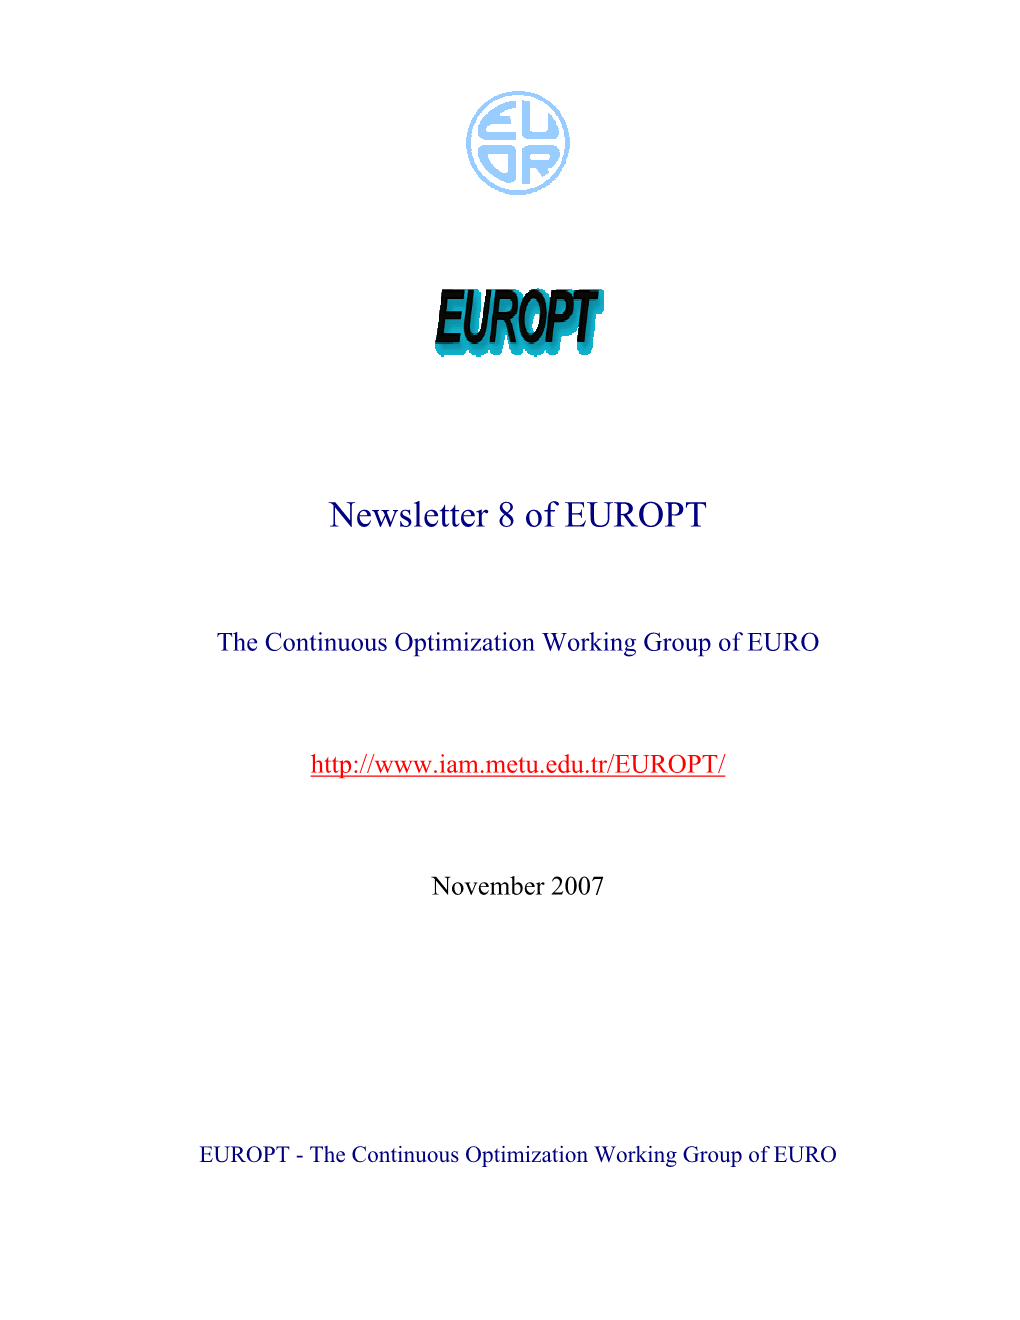 Newsletter of EUROPT